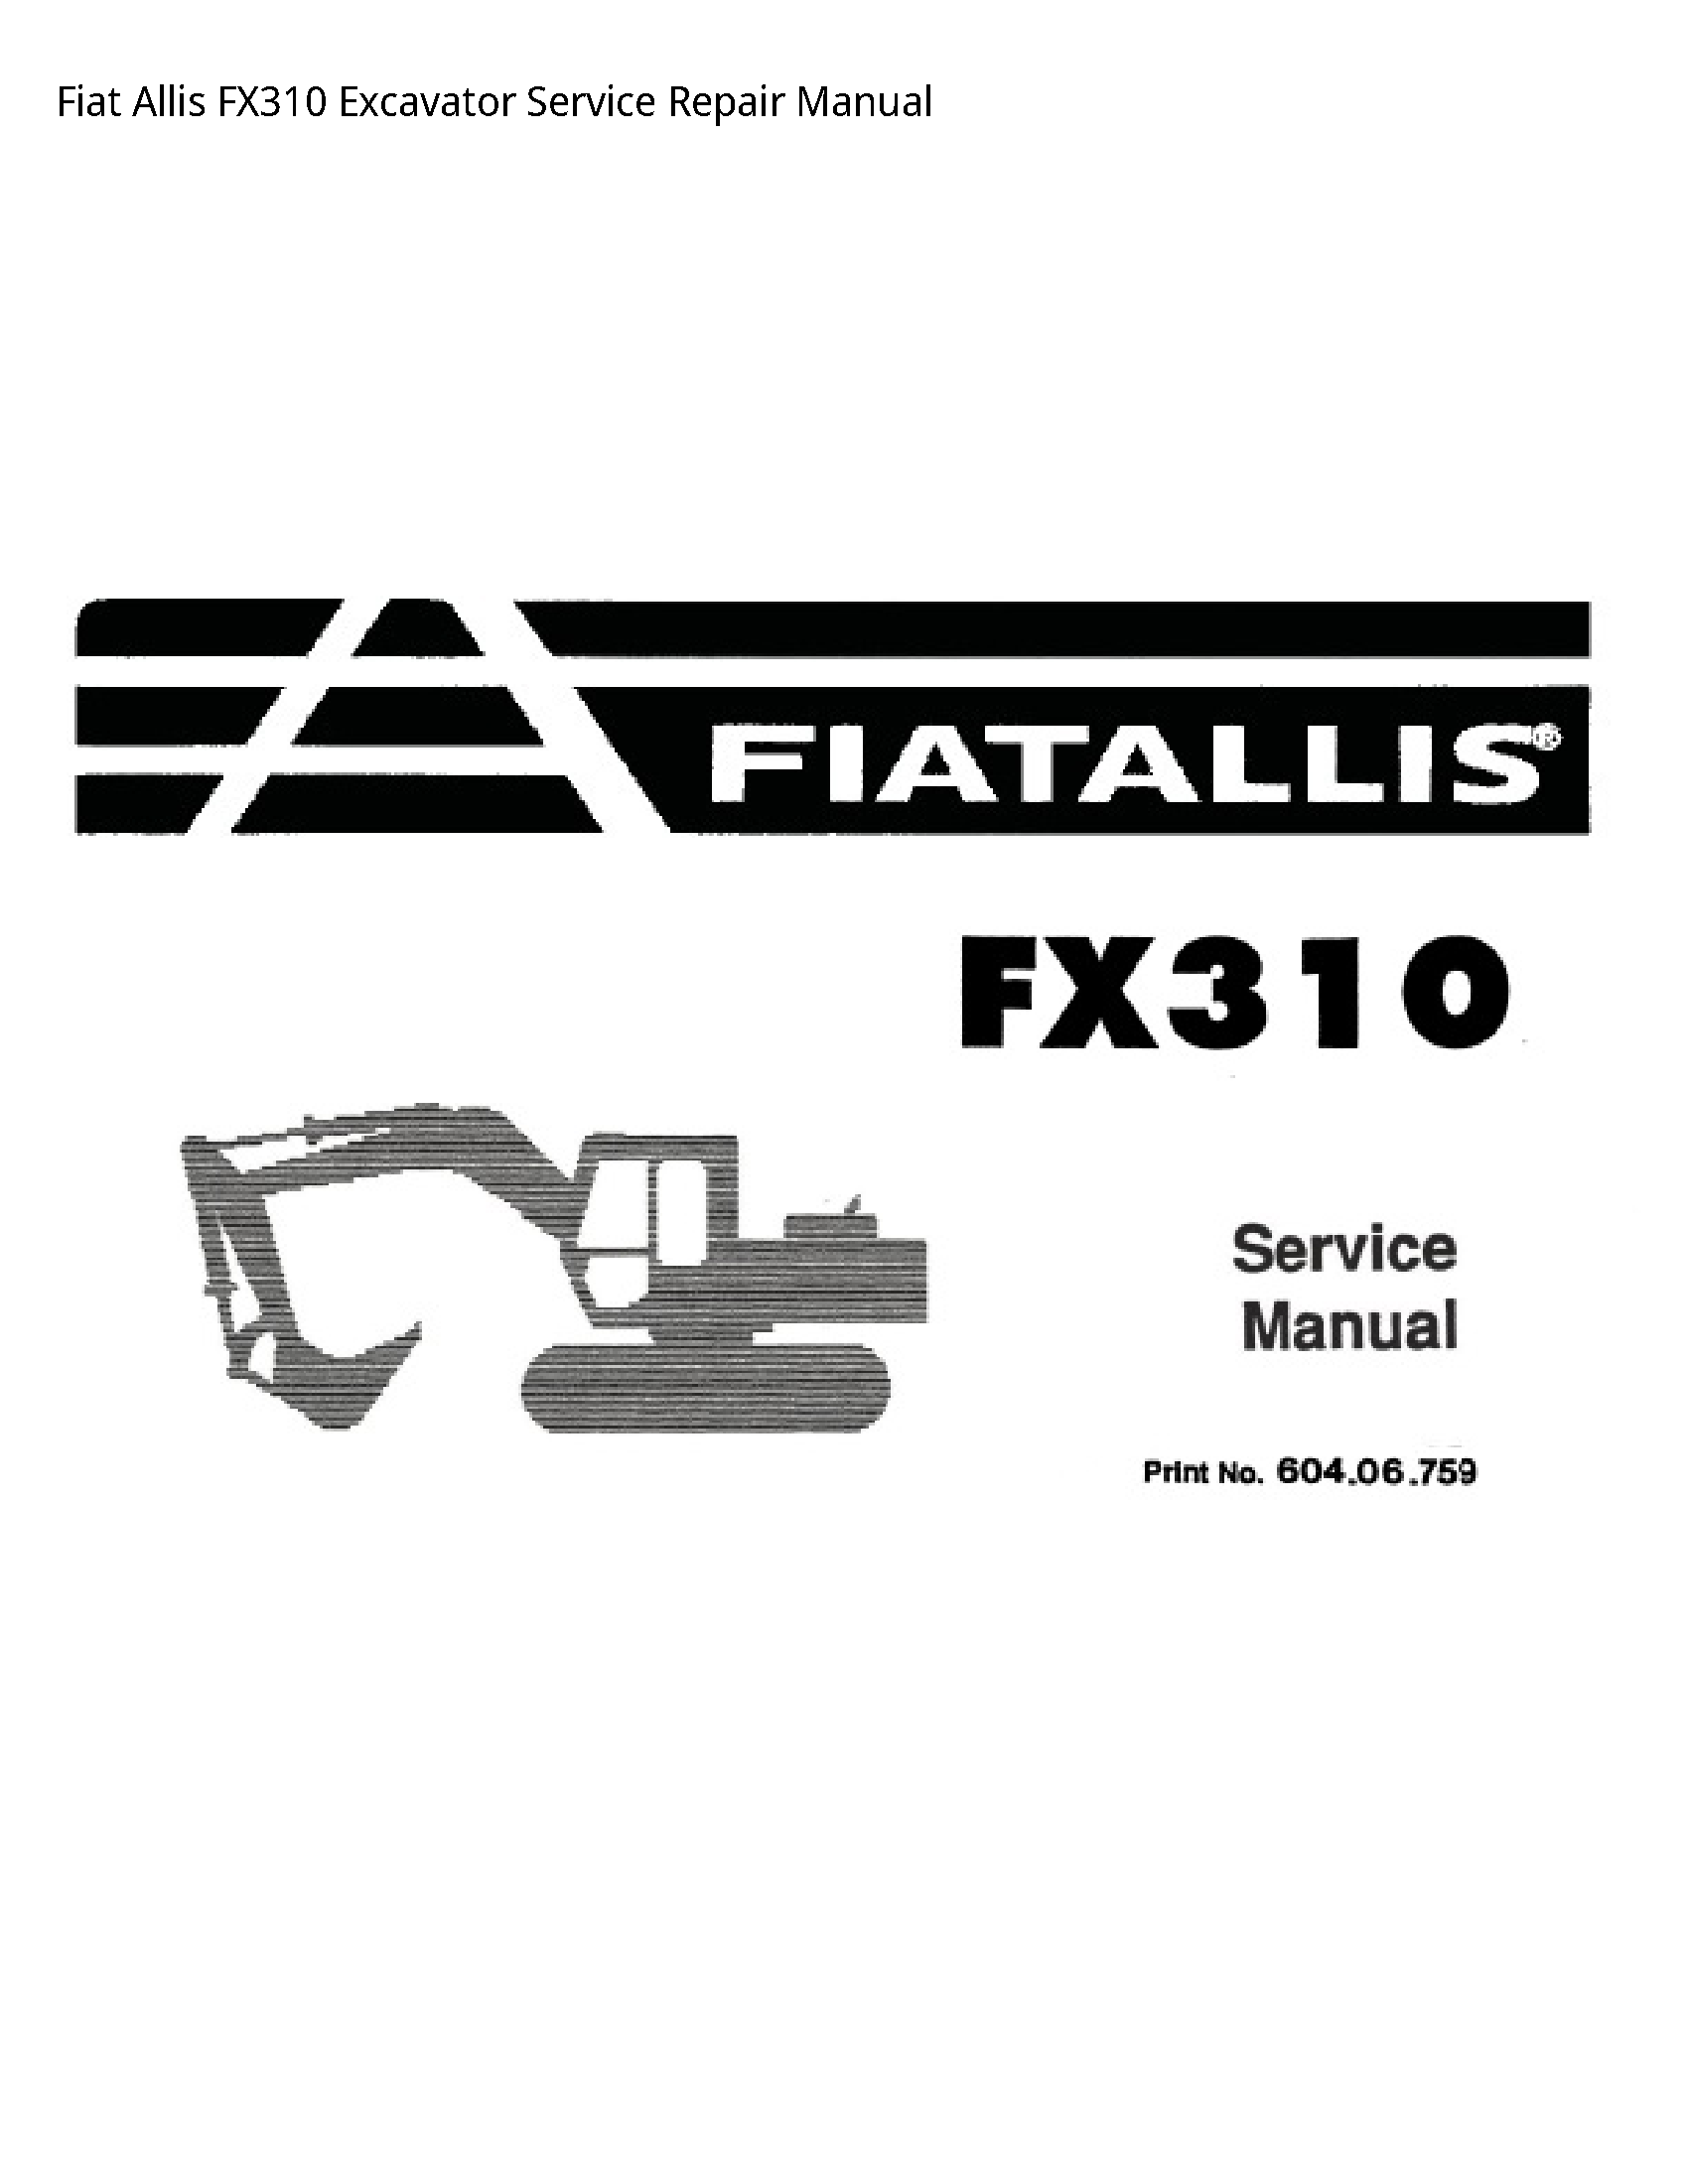 Fiat Allis FX310 Excavator manual